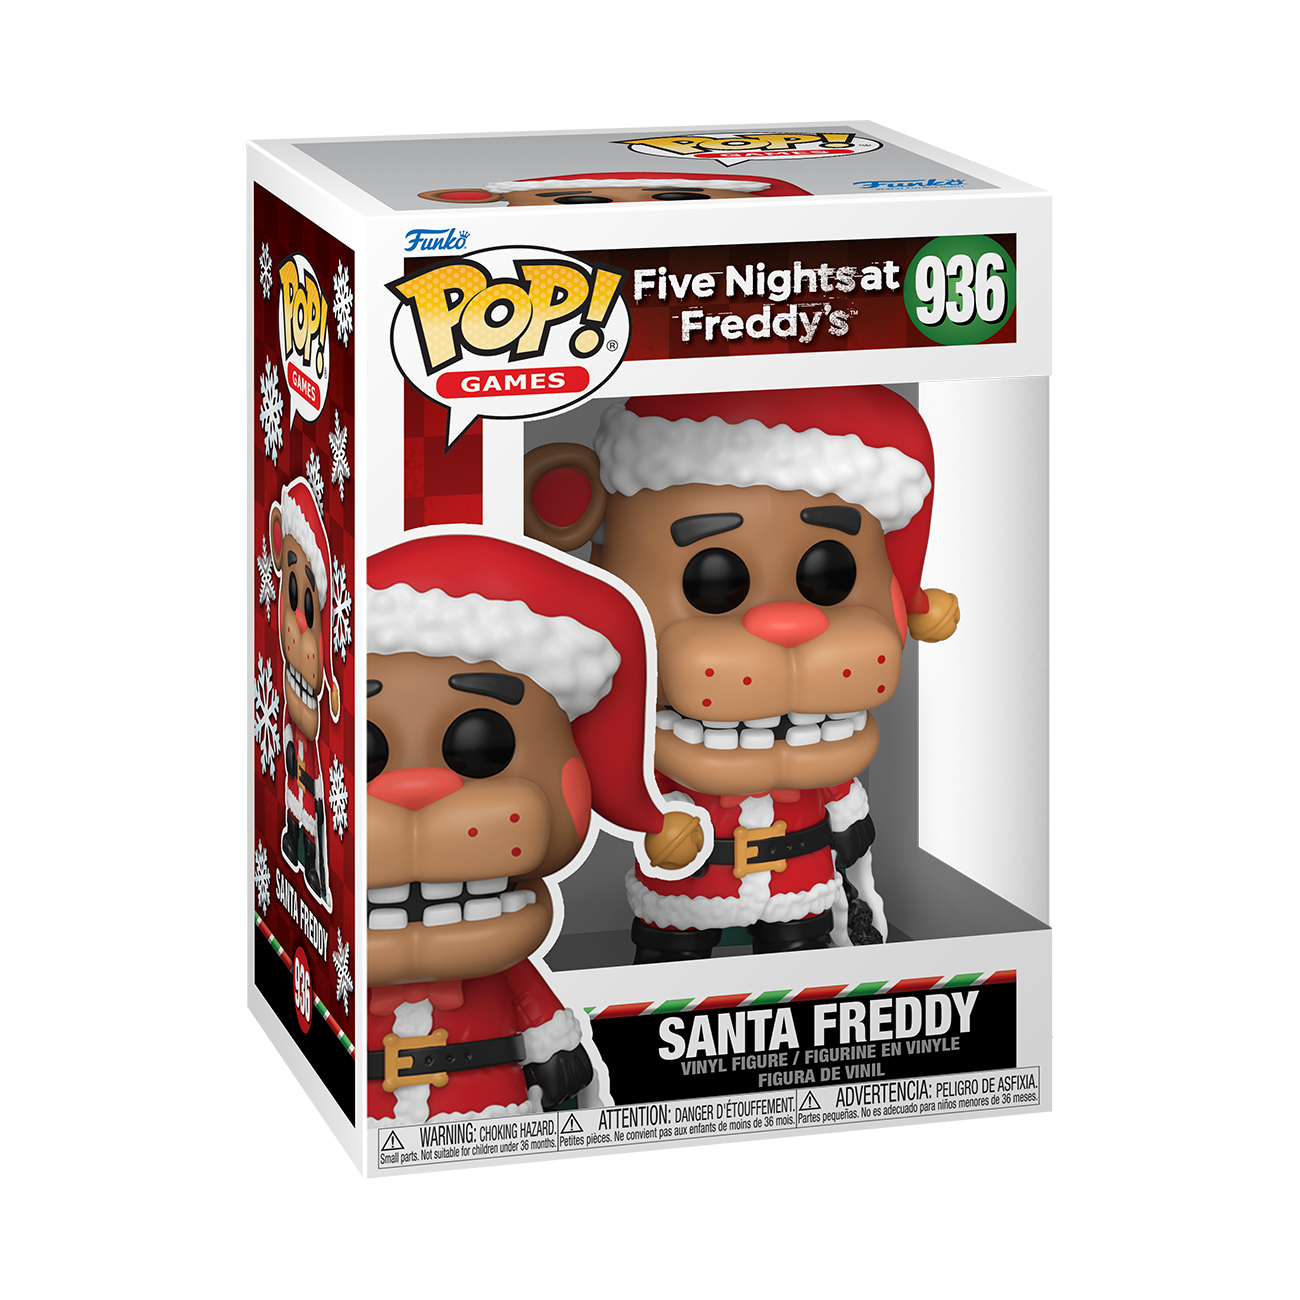 Santa Freddy Plush